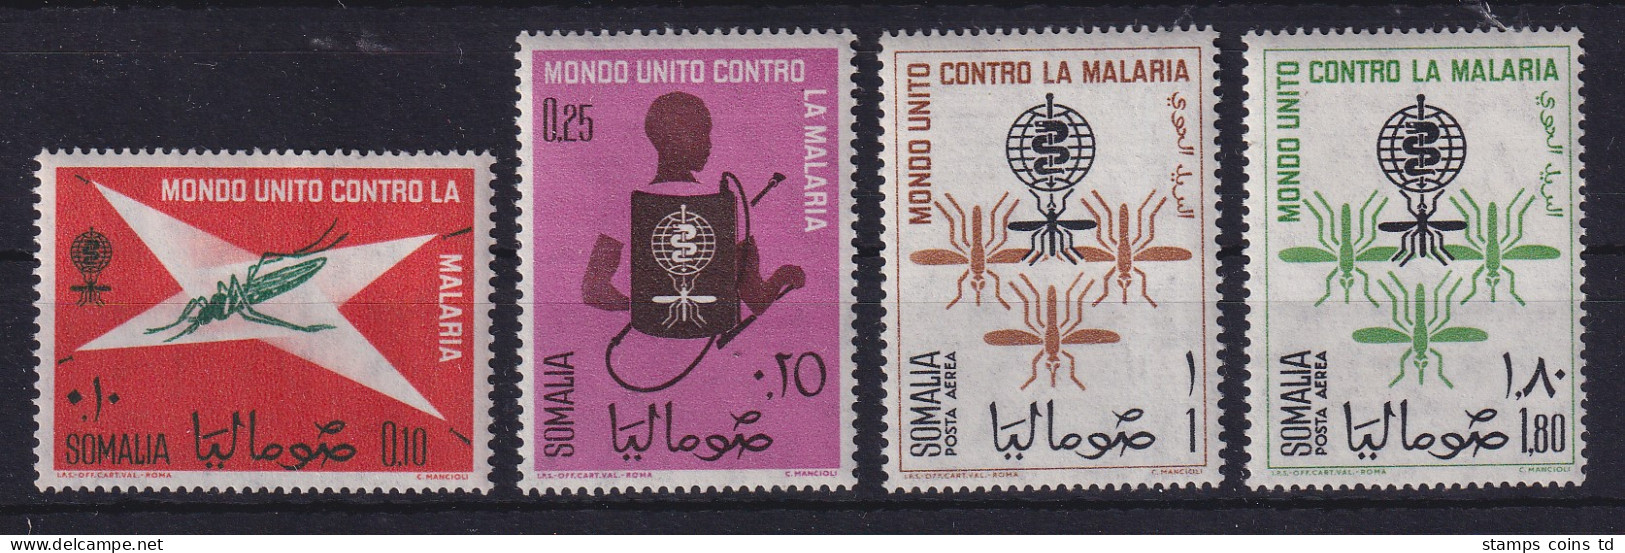 Somalia 1962 Kampf Gegen Die Malaria - Mücken Mi.-Nr. 39-42 Postfrisch ** - Somalie (1960-...)